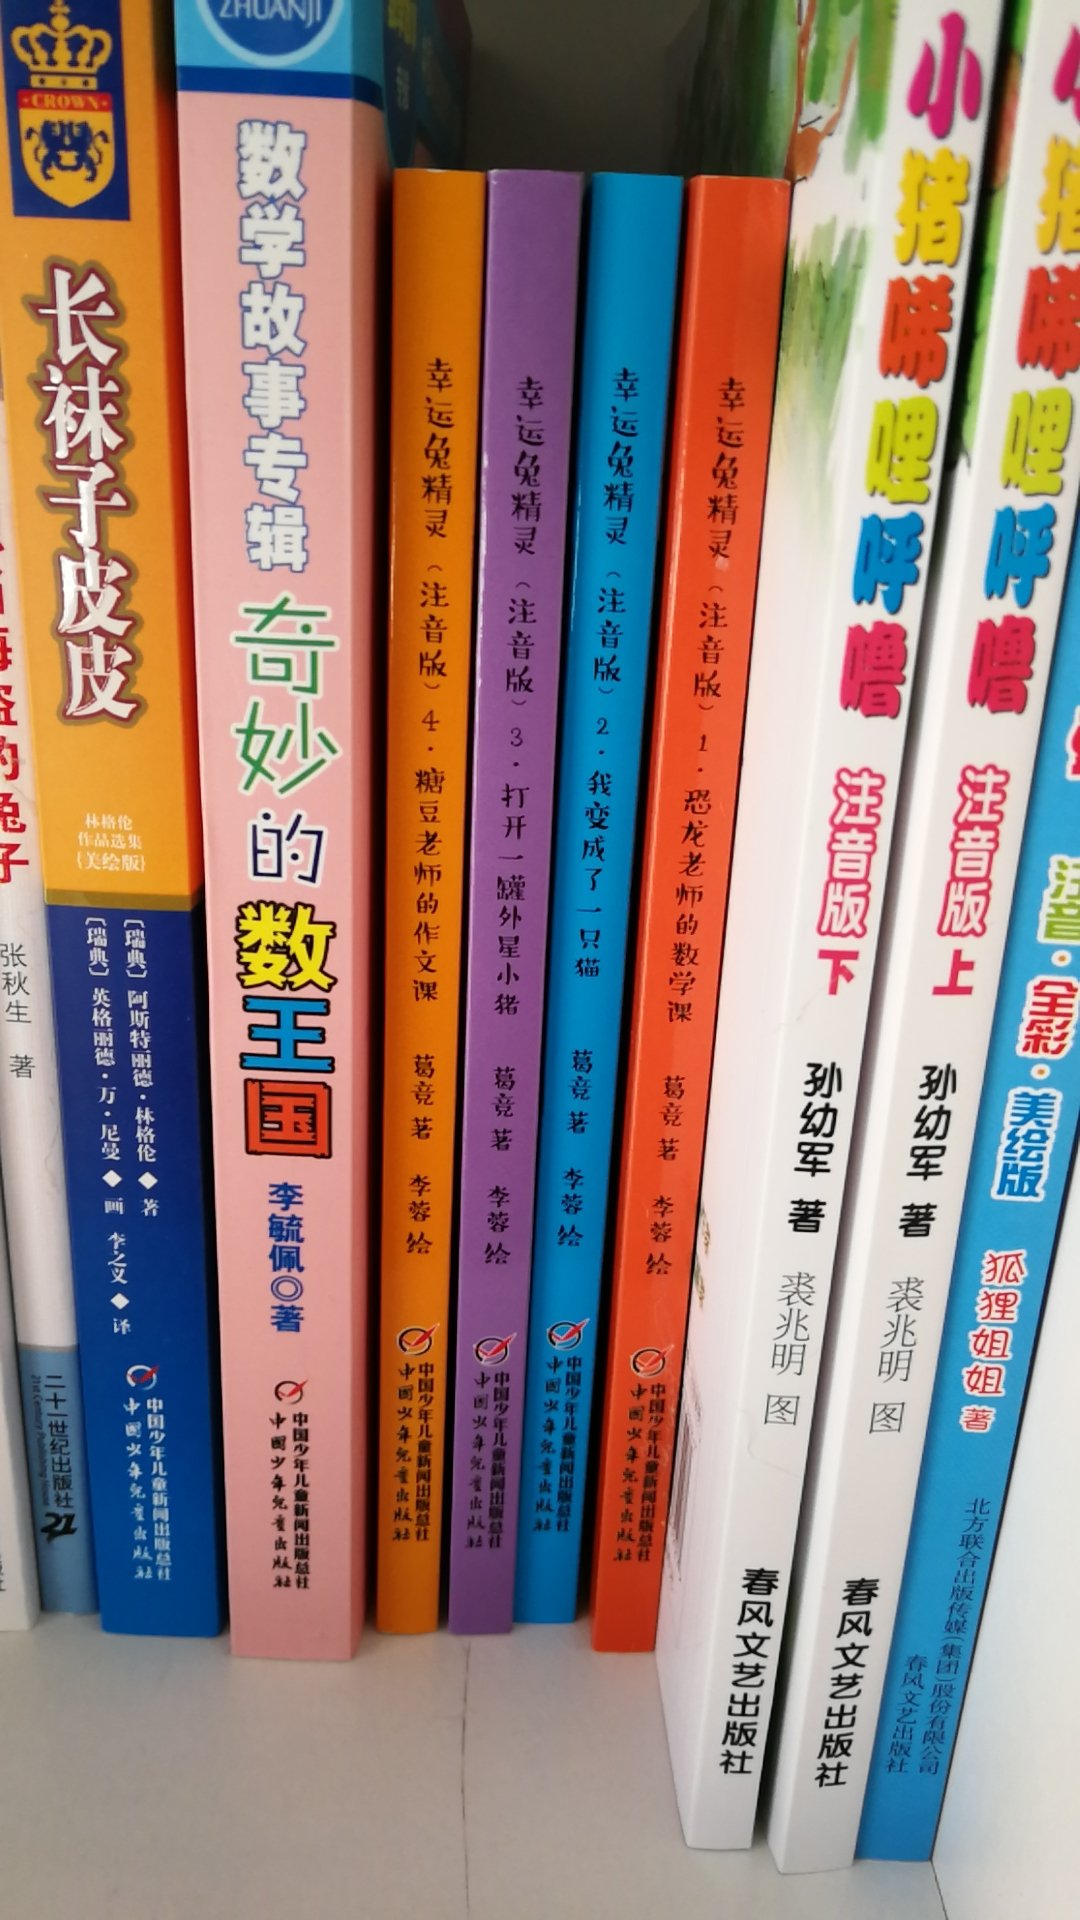 老师推荐一年级的小朋友阅读本套书中的《恐龙老师的数学课》。中国少儿出版社的，应该错不了，所以我买了全套，跟小朋友一起学习。